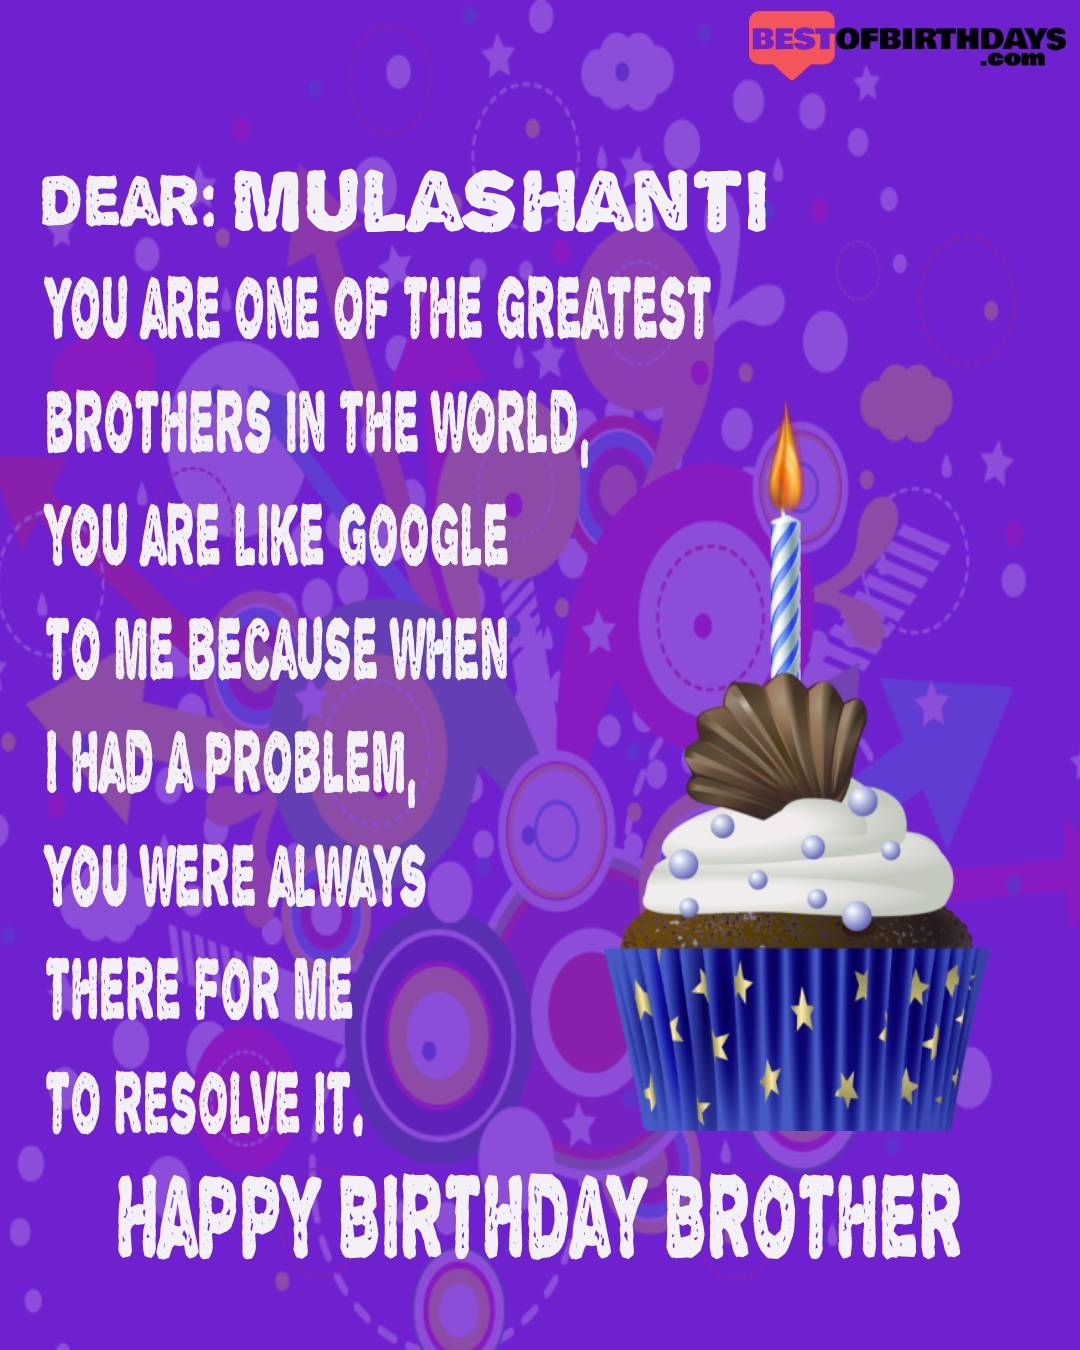 Happy birthday mulashanti bhai brother bro